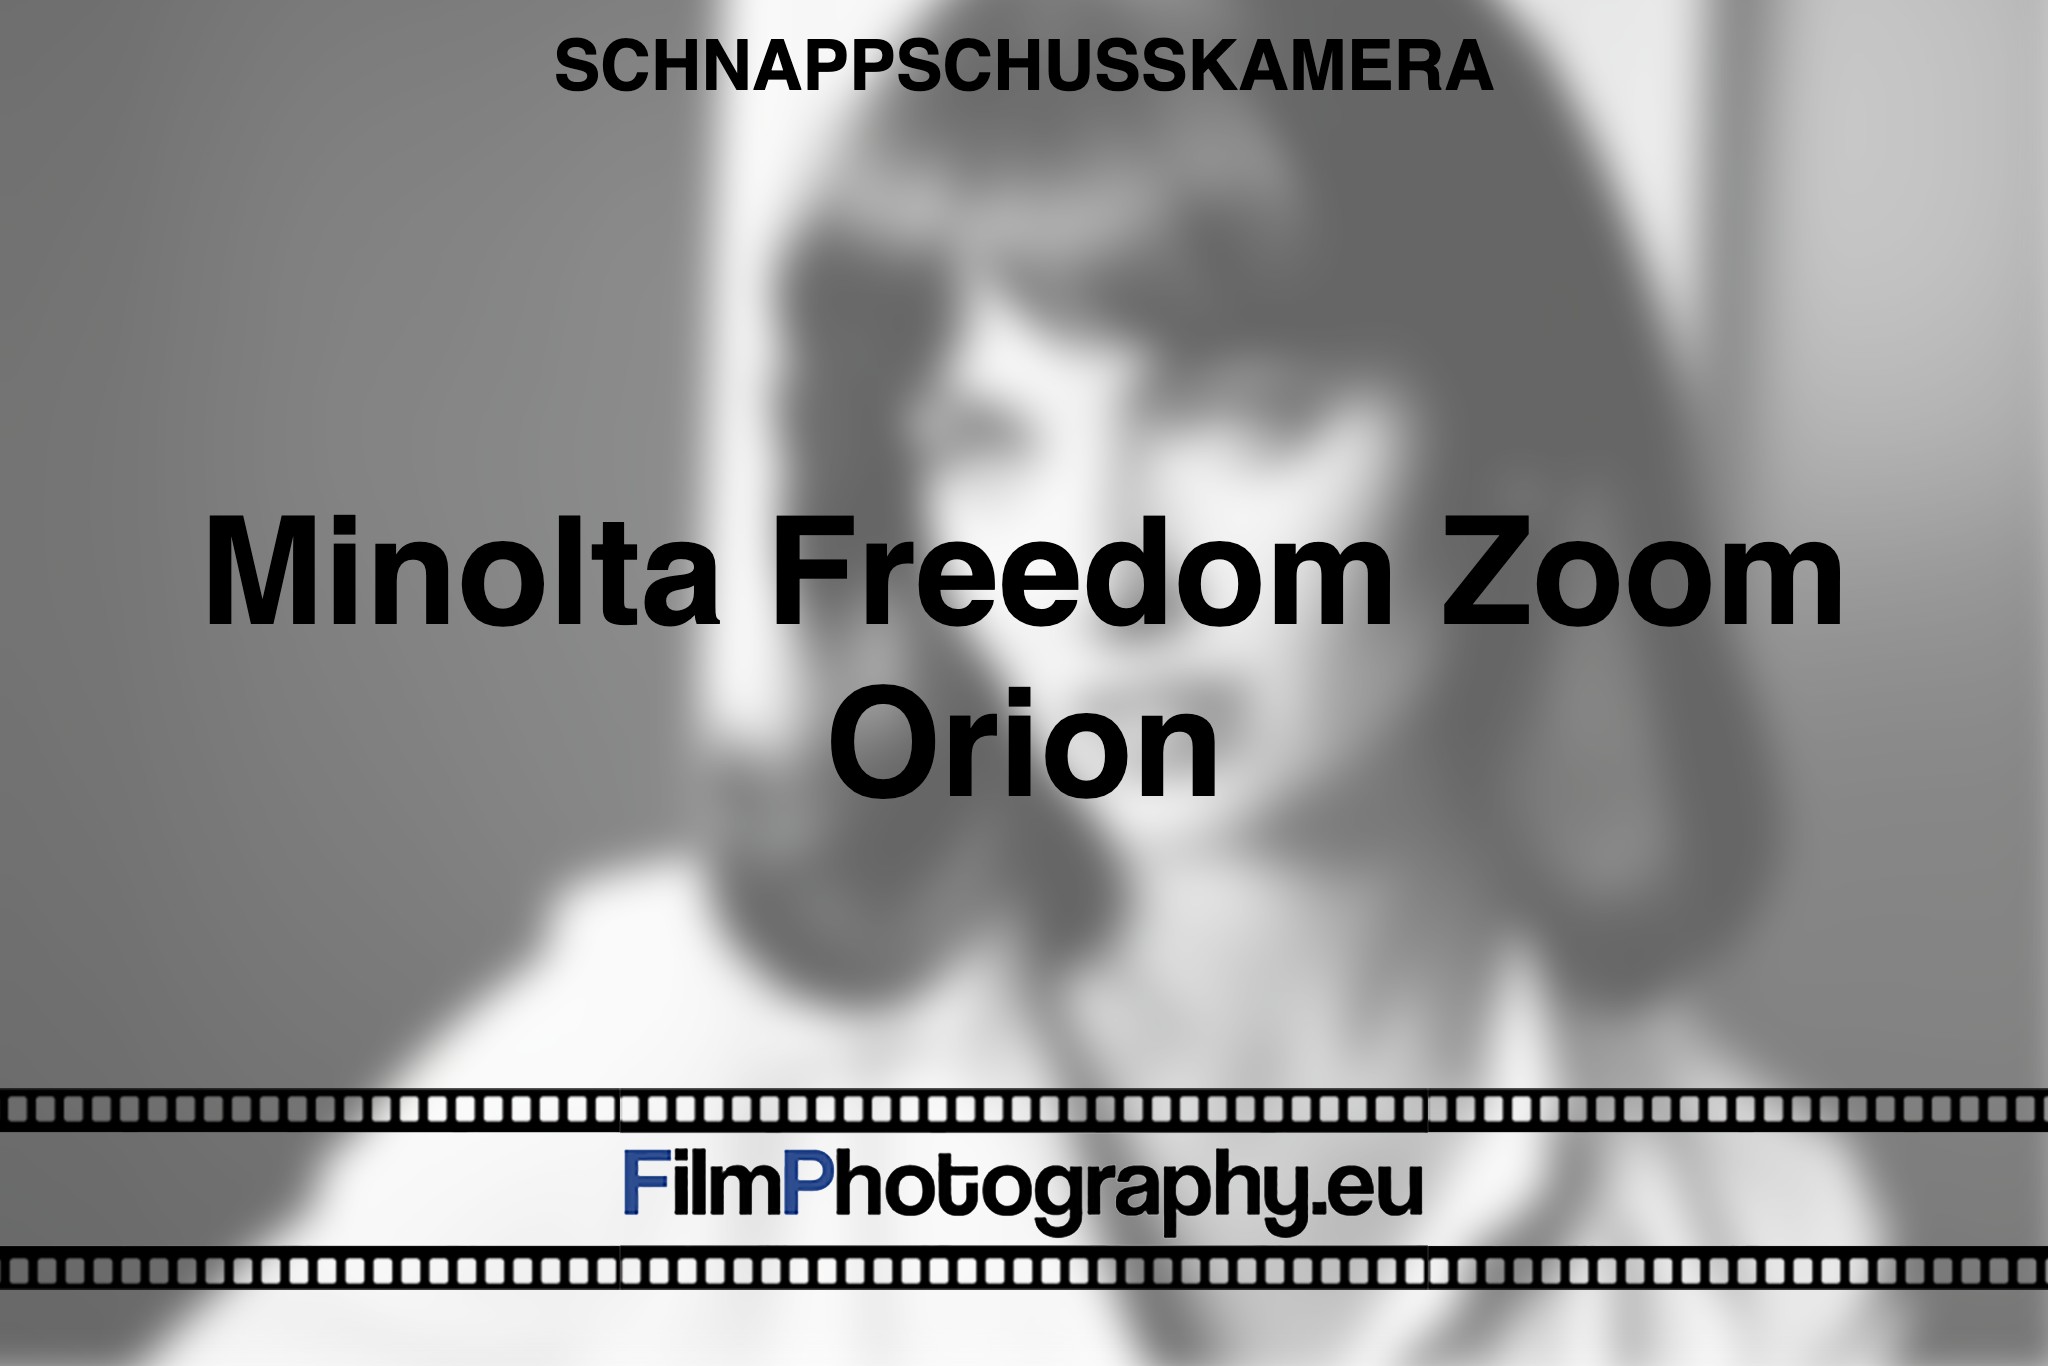 minolta-freedom-zoom-orion-schnappschusskamera-bnv